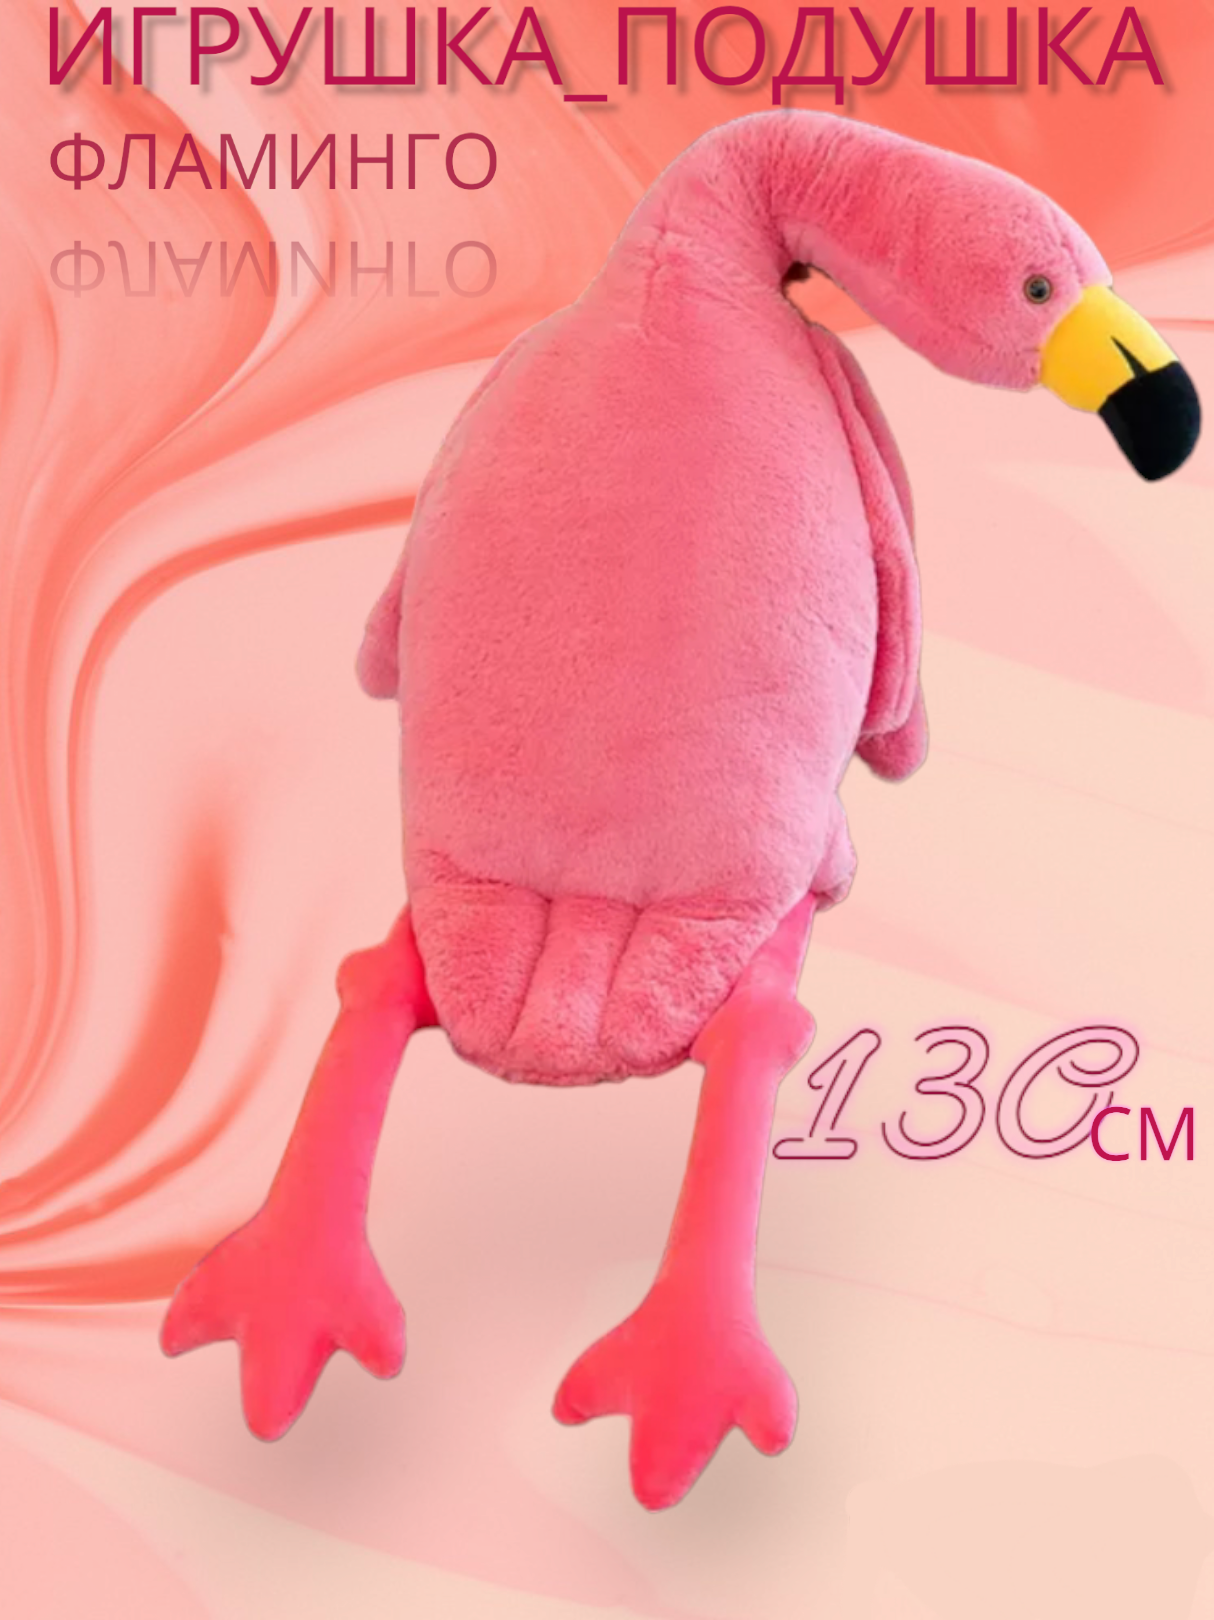 Мягкая игрушка "Фламинго Обними", большой размер, розовый цвет